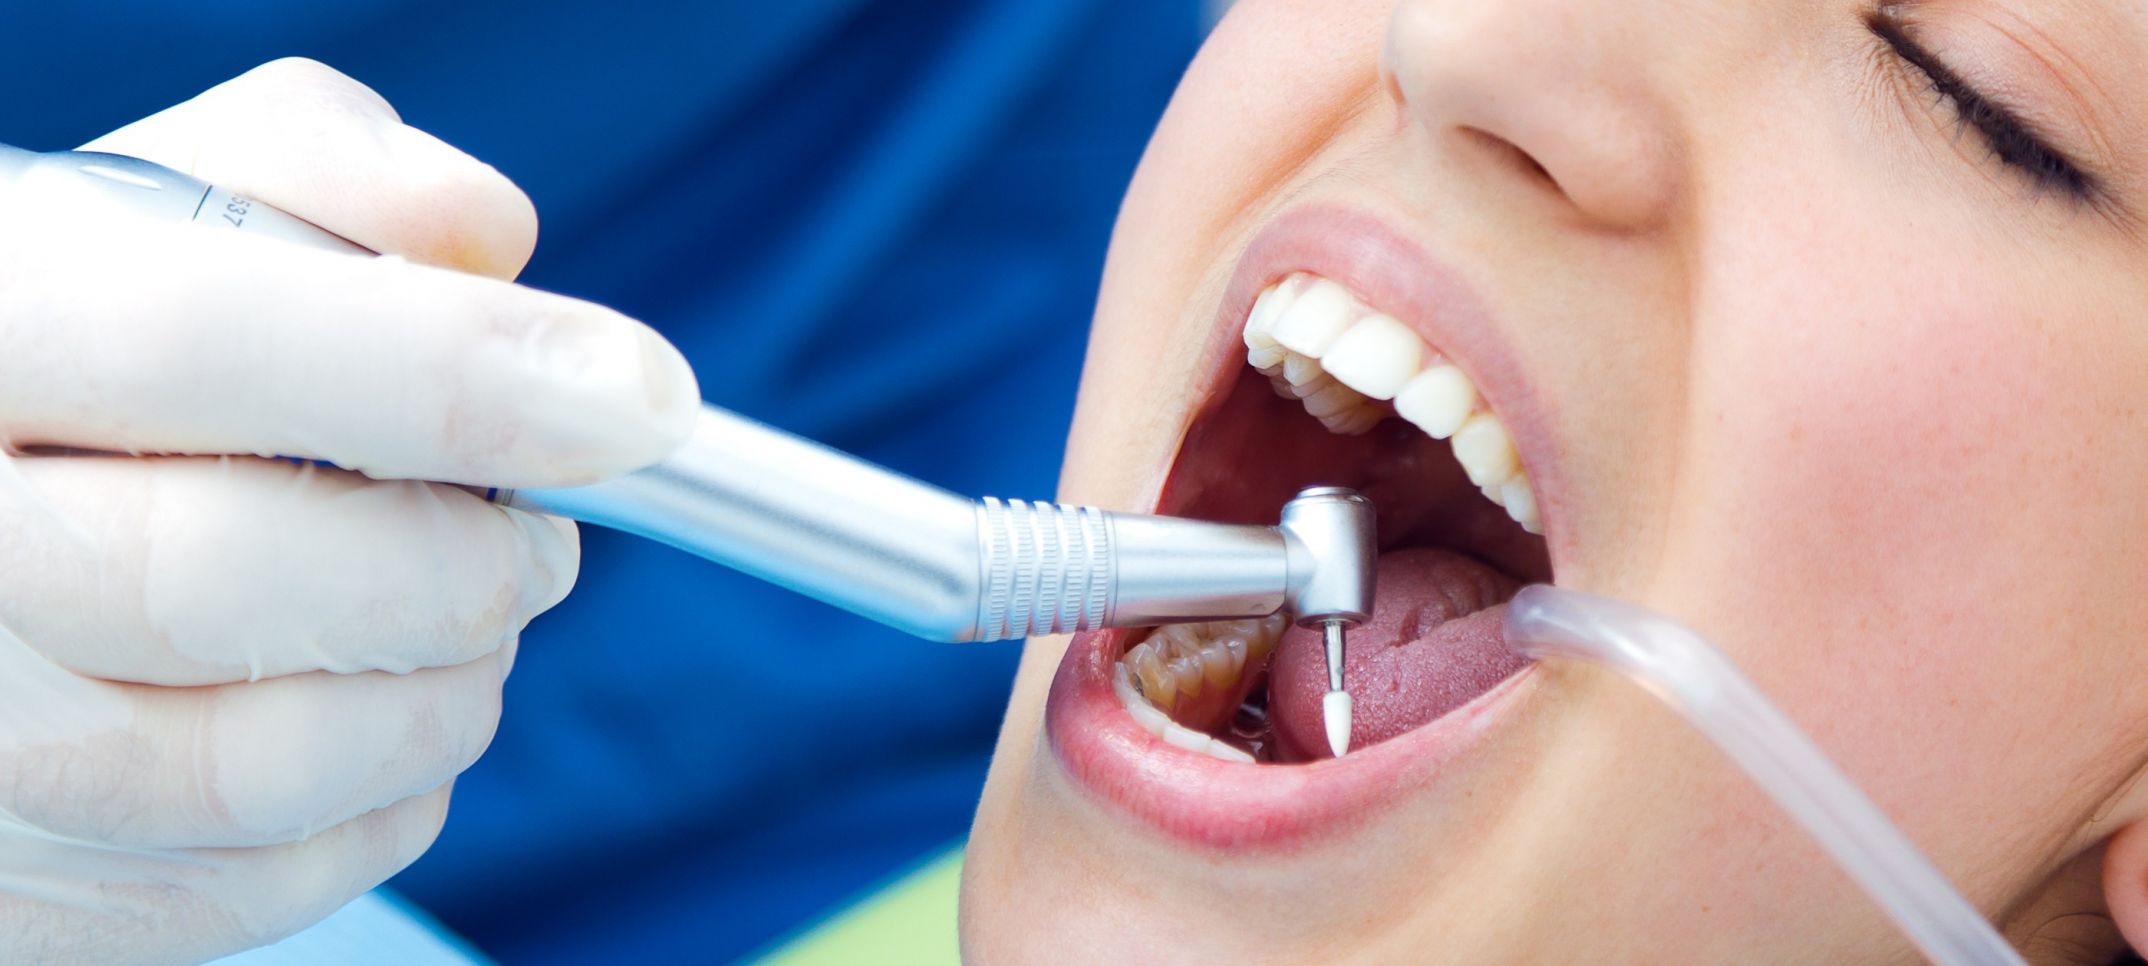 Что делать после лечения зубов. Профессиональная гигиена полости рта. Терапевтическая стоматология зубов.